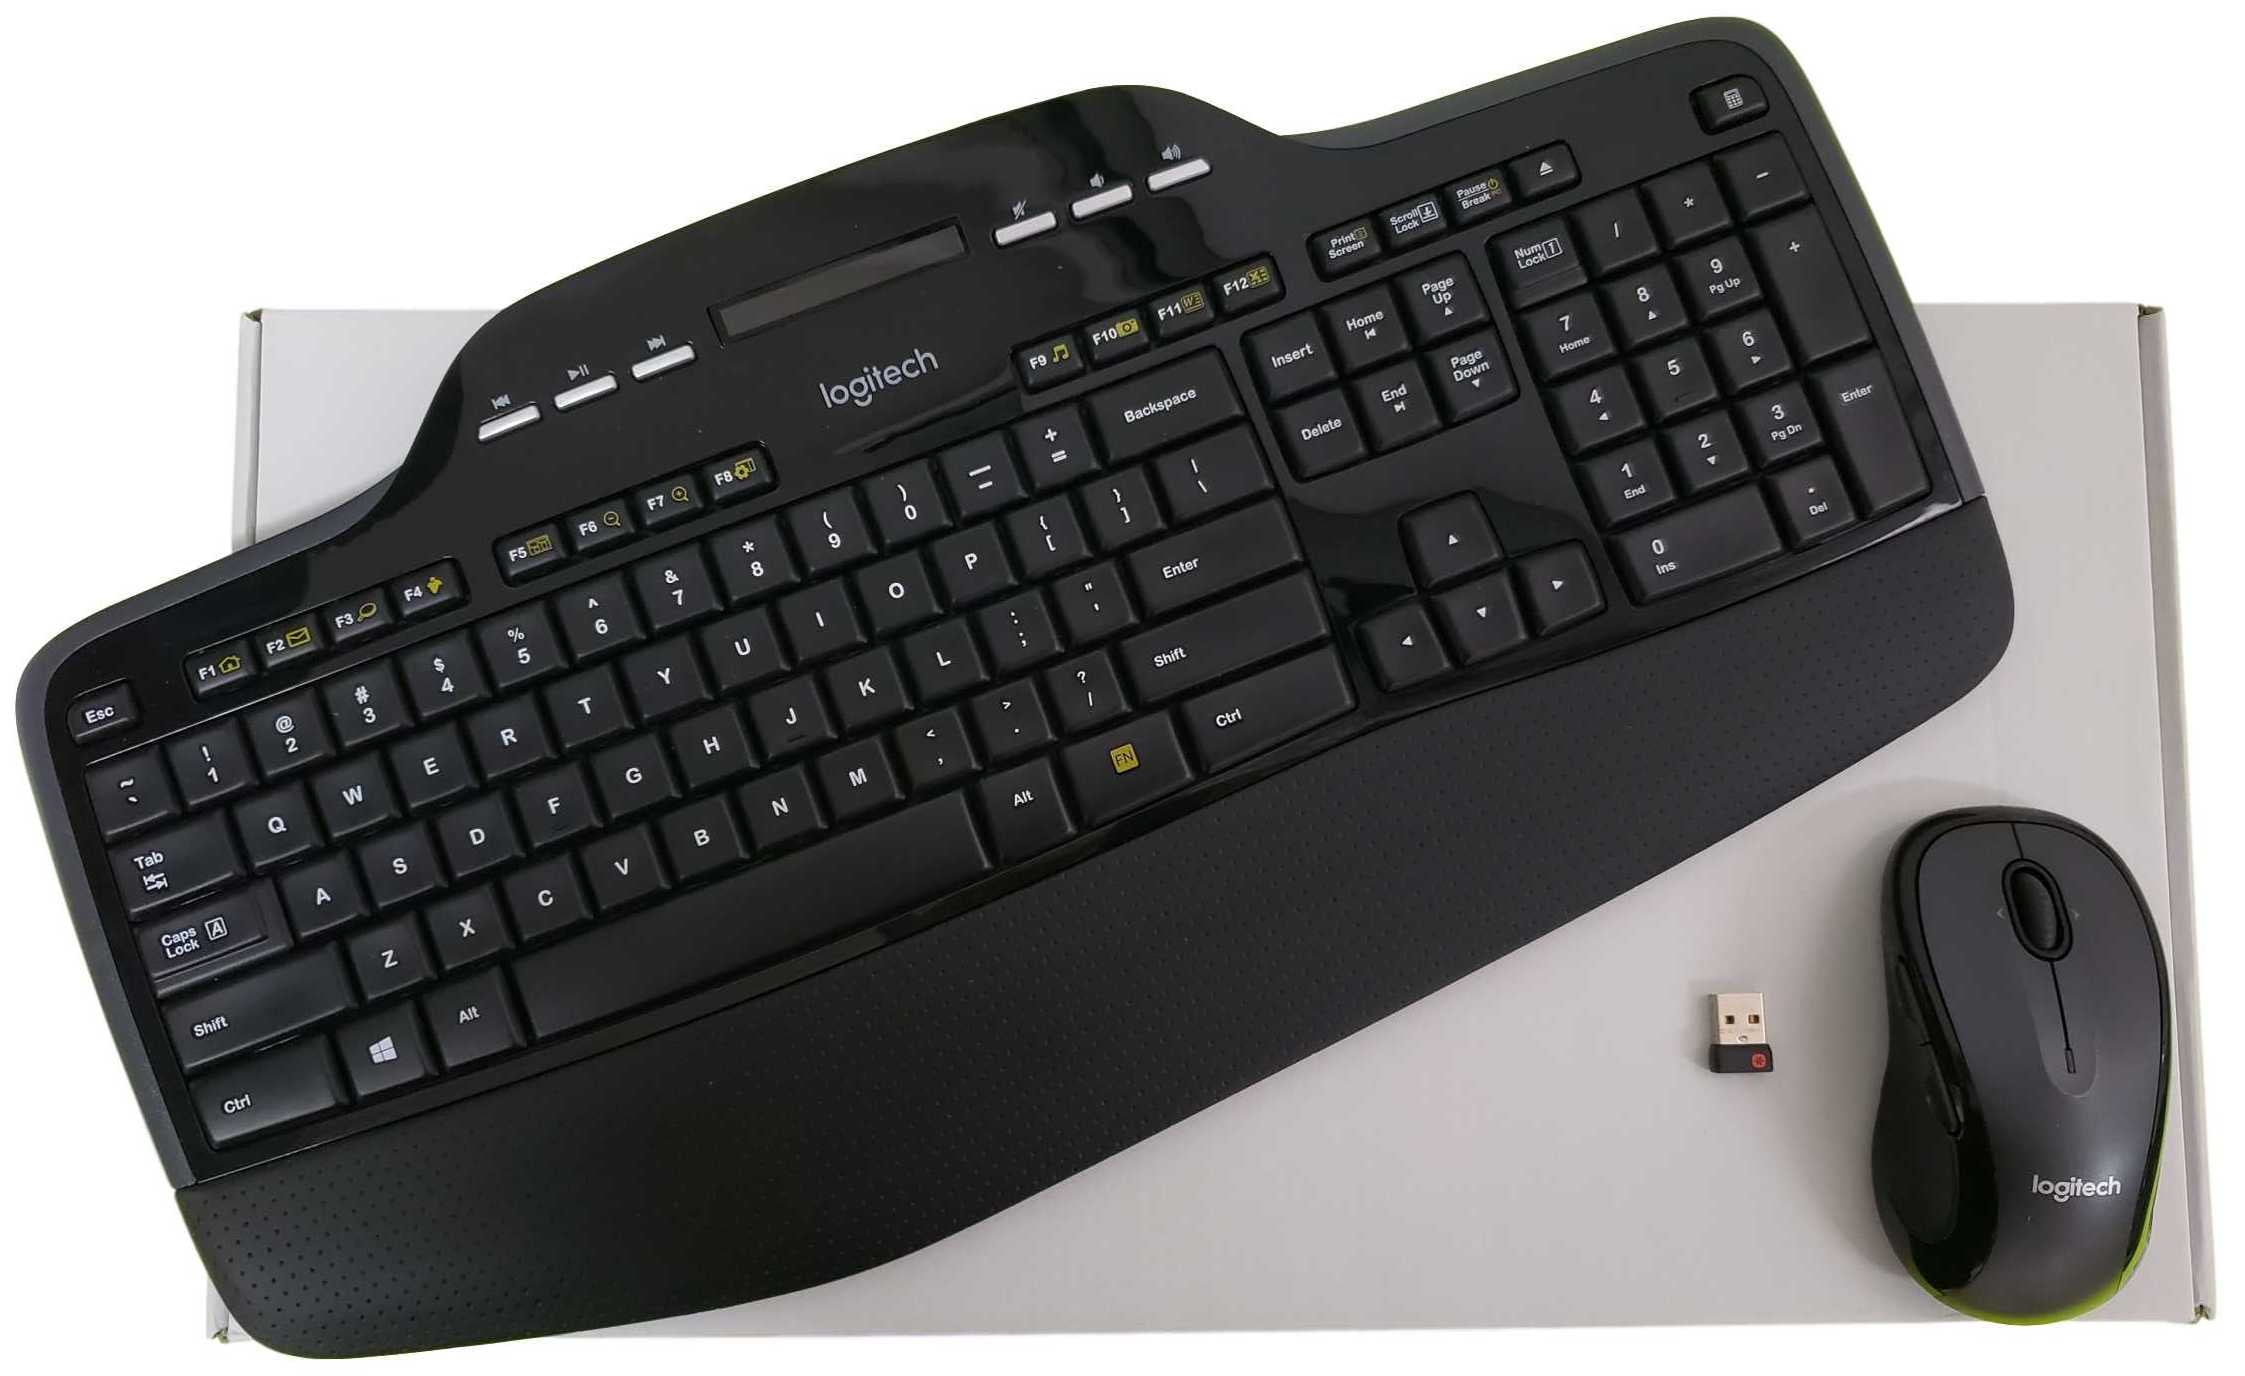 Logitech MK700/710 Keyboard And M705 Mouse Wireless Combo Set